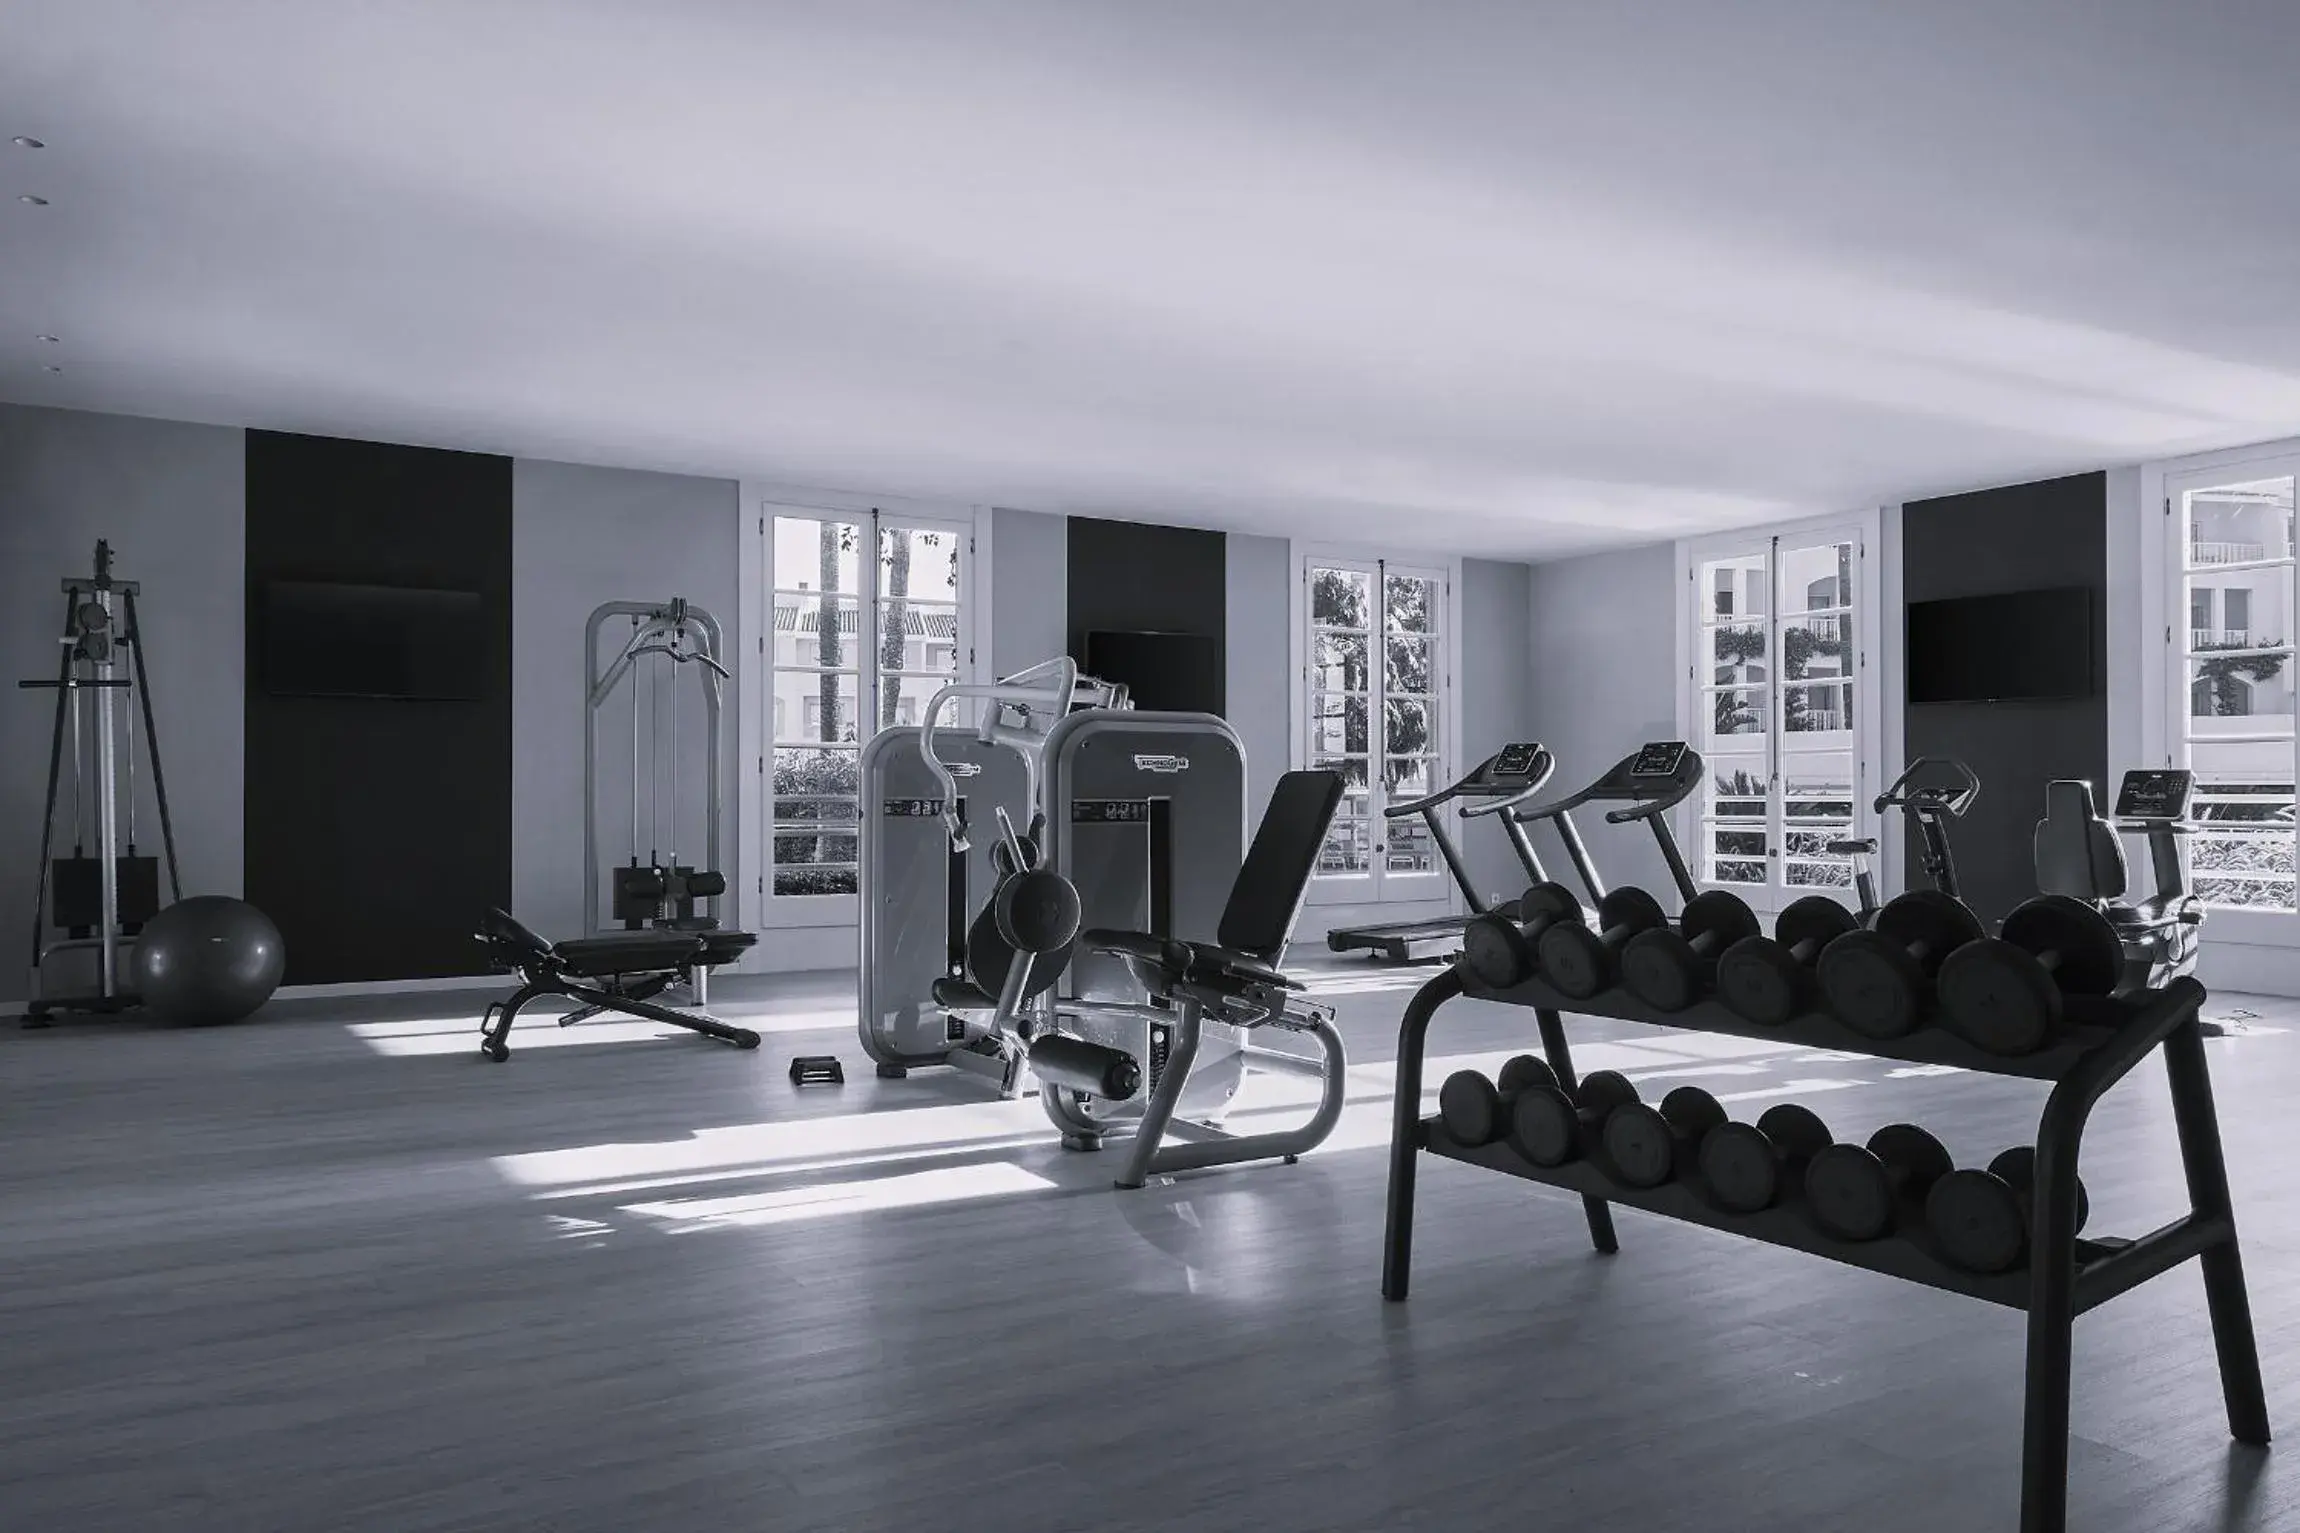 Fitness centre/facilities, Fitness Center/Facilities in Prinsotel La Caleta